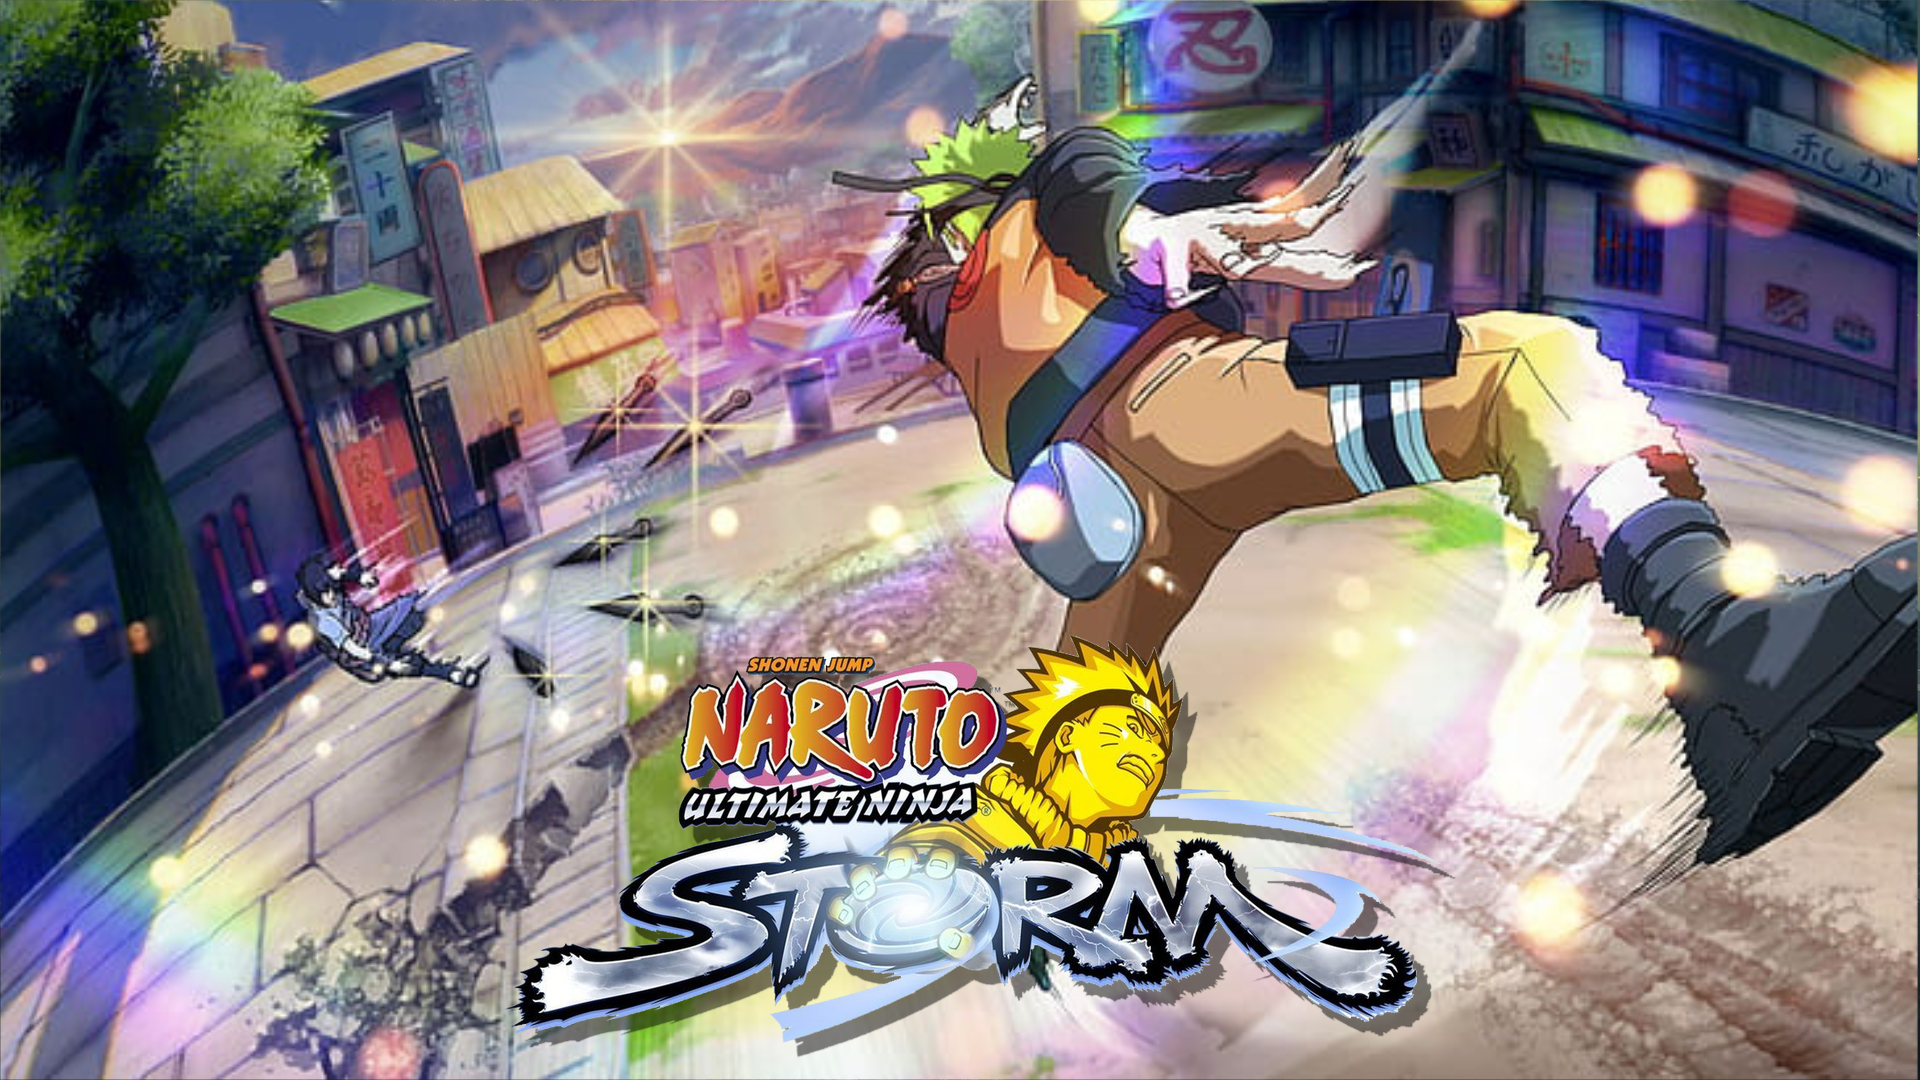 Bandai Namco trademarks Naruto 'Ultimate Ninja Storm CONNECTIONS